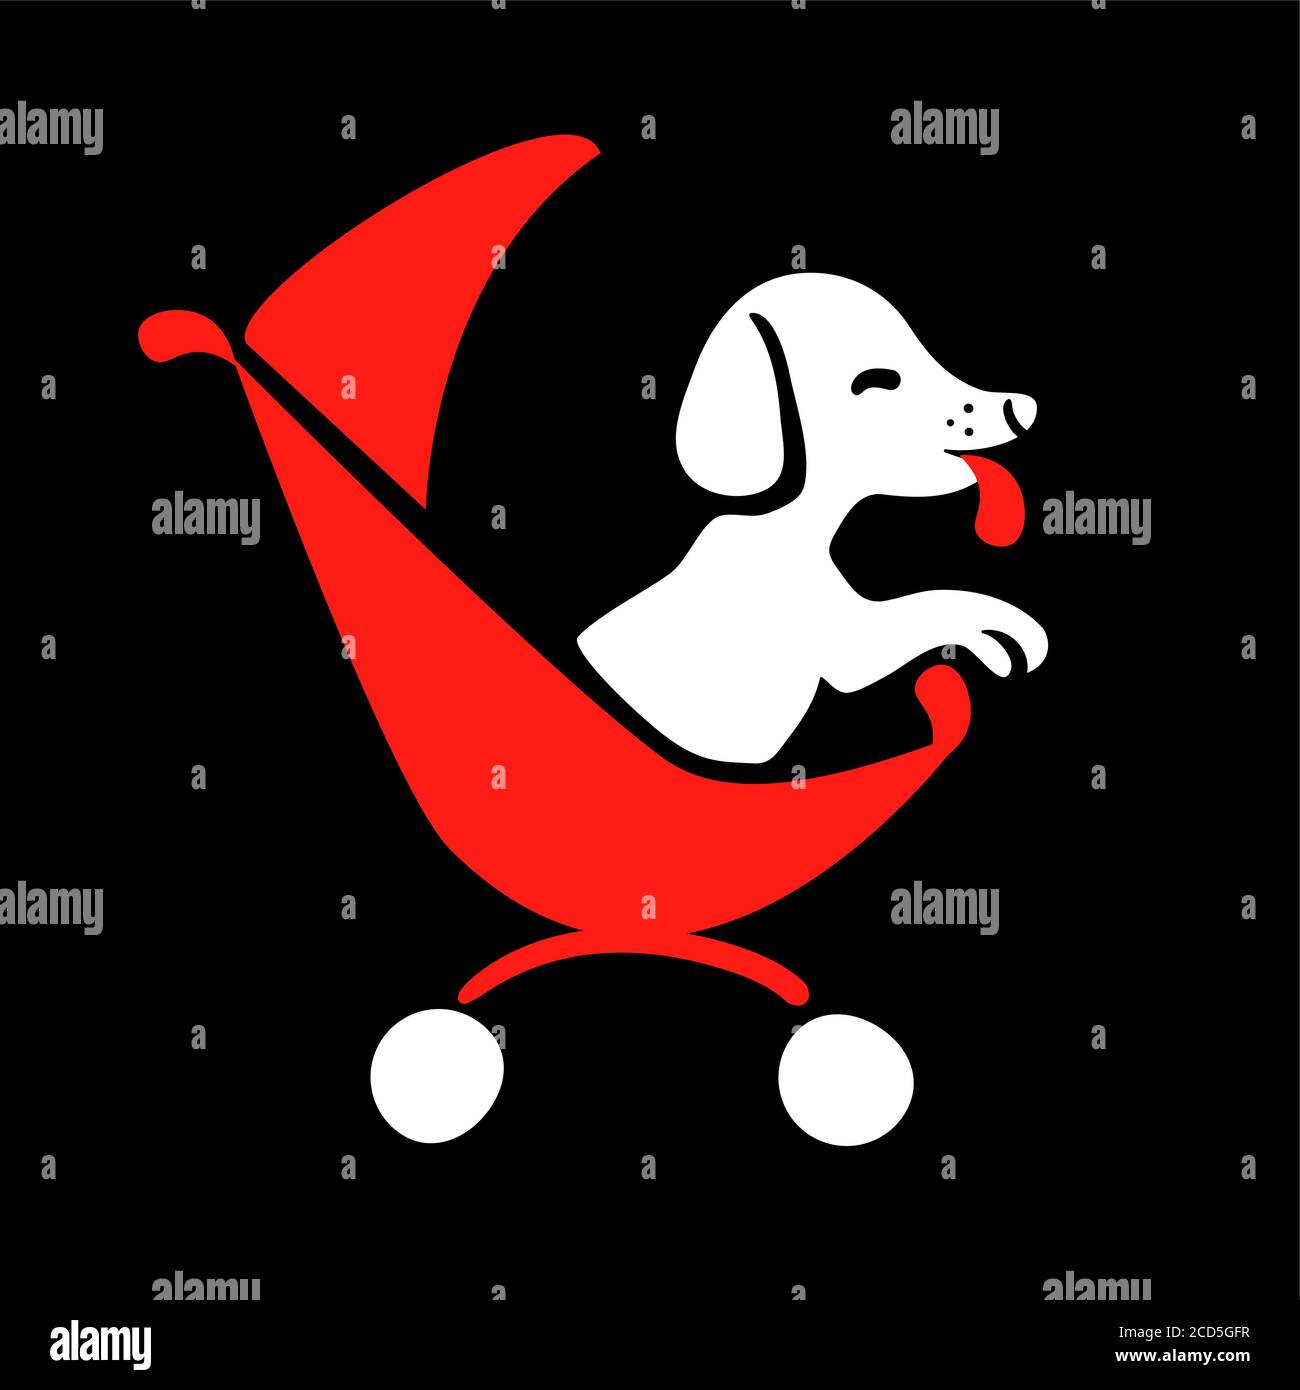 Logo Dog sitter in stile disegno su sfondo nero per l'evidenziazione. Animale domestico da passeggio in rosso elemento isolato vettore icona carrello. Illustrazione piatta del trasporto allo zoo. Concetto divertente di affari di cura degli animali. Illustrazione Vettoriale